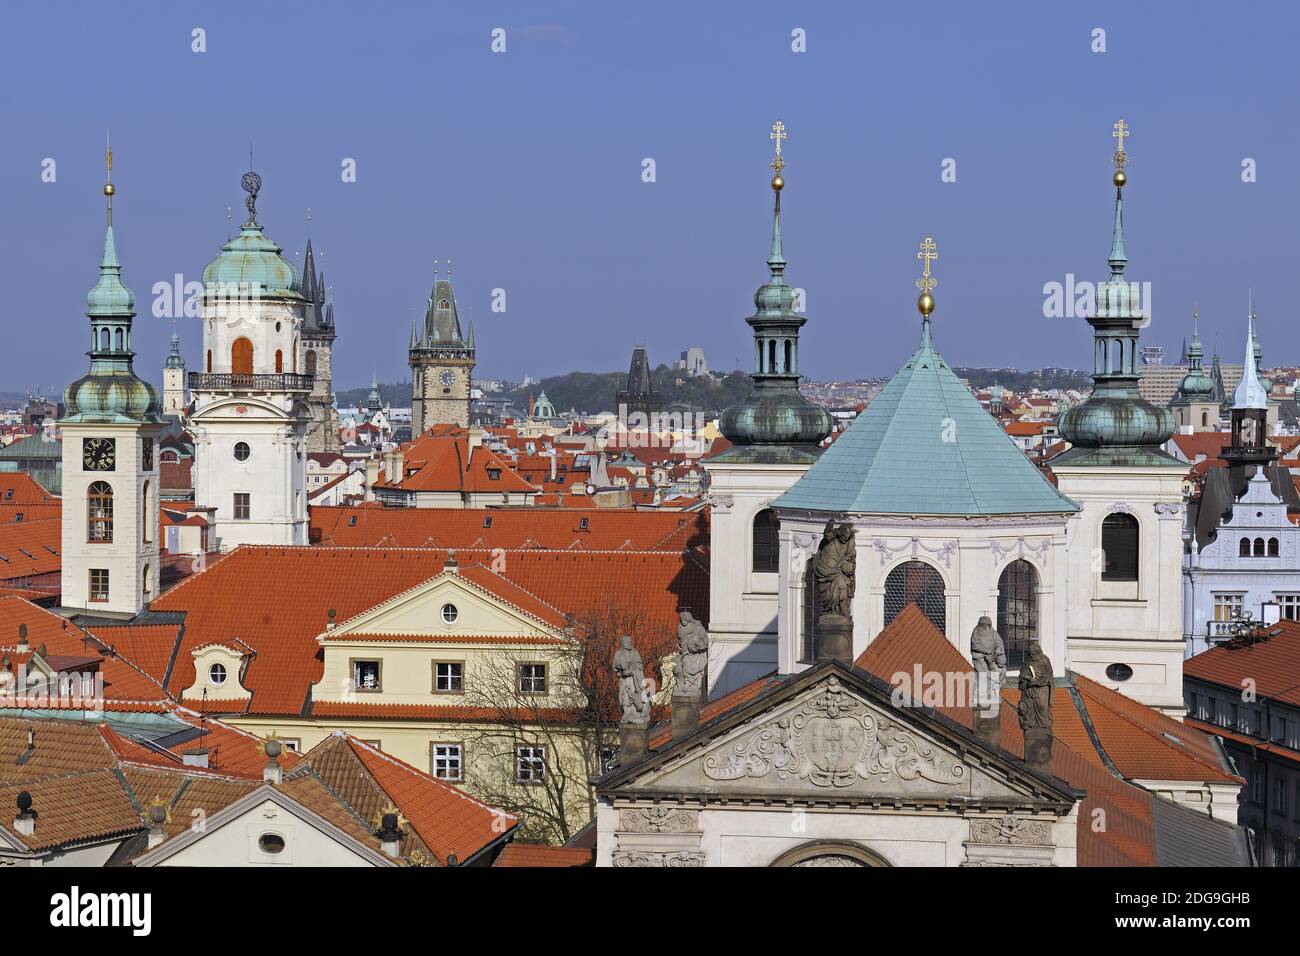 Blick vom Altstädter Turm ueber die Dächer der  Altstadt am Abend, Prag, Böhmen, Tschechien, Europa Stock Photo